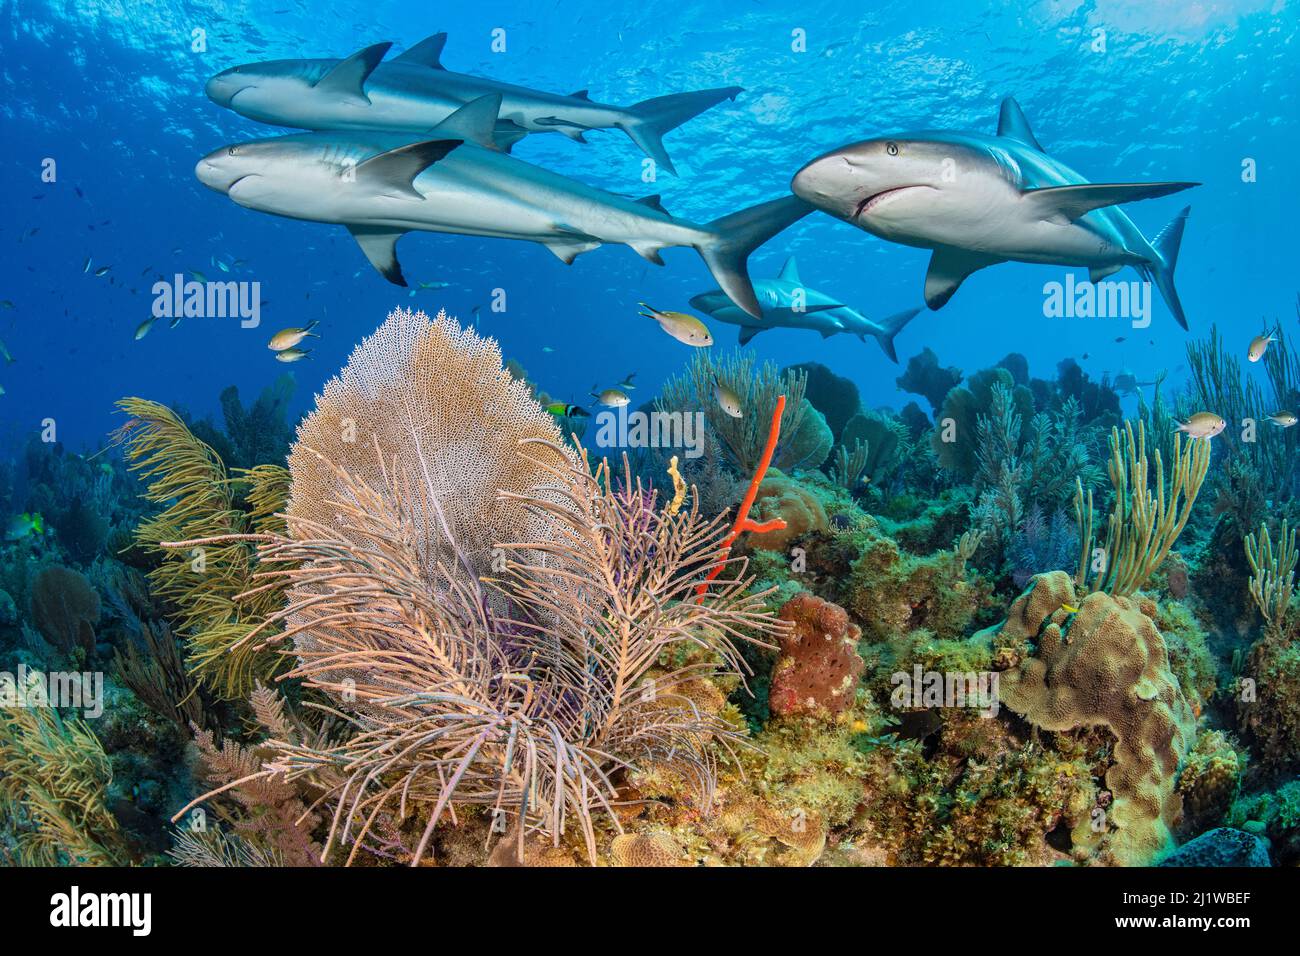 Ein Schauer karibischer Riffhaie (Carcharhinus perezi) schwimmt über einem Korallenriff mit Common Sea Fans (Gorgonia ventalina) und Seefahnen (Pseudopterogo) Stockfoto